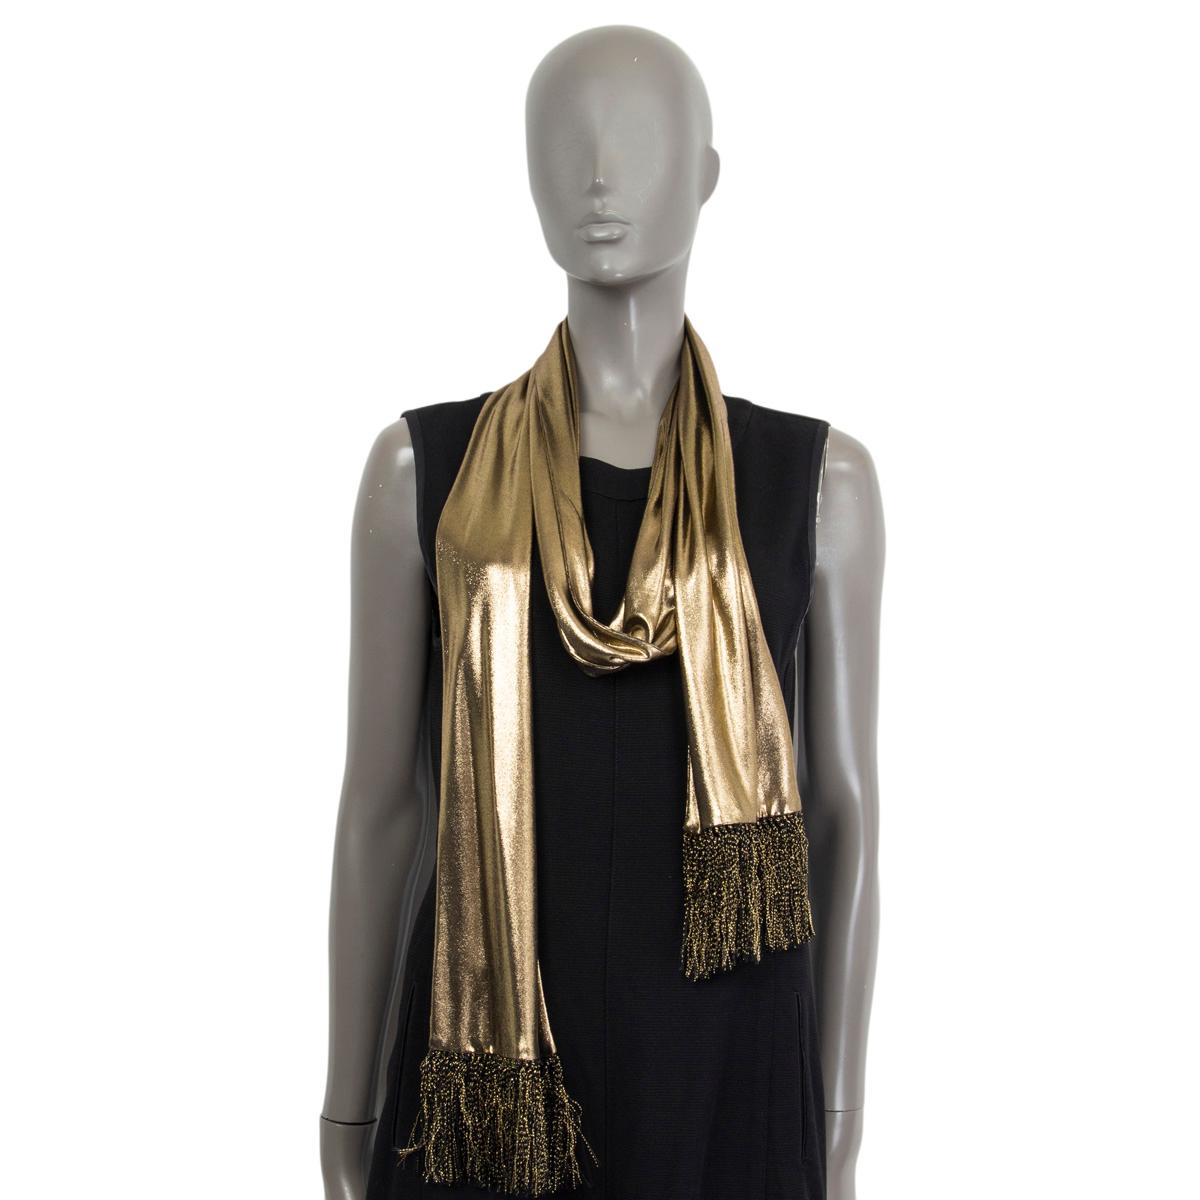 discount 82% Golden Single Zara Iridescent golden scarf WOMEN FASHION Accessories Shawl Golden 